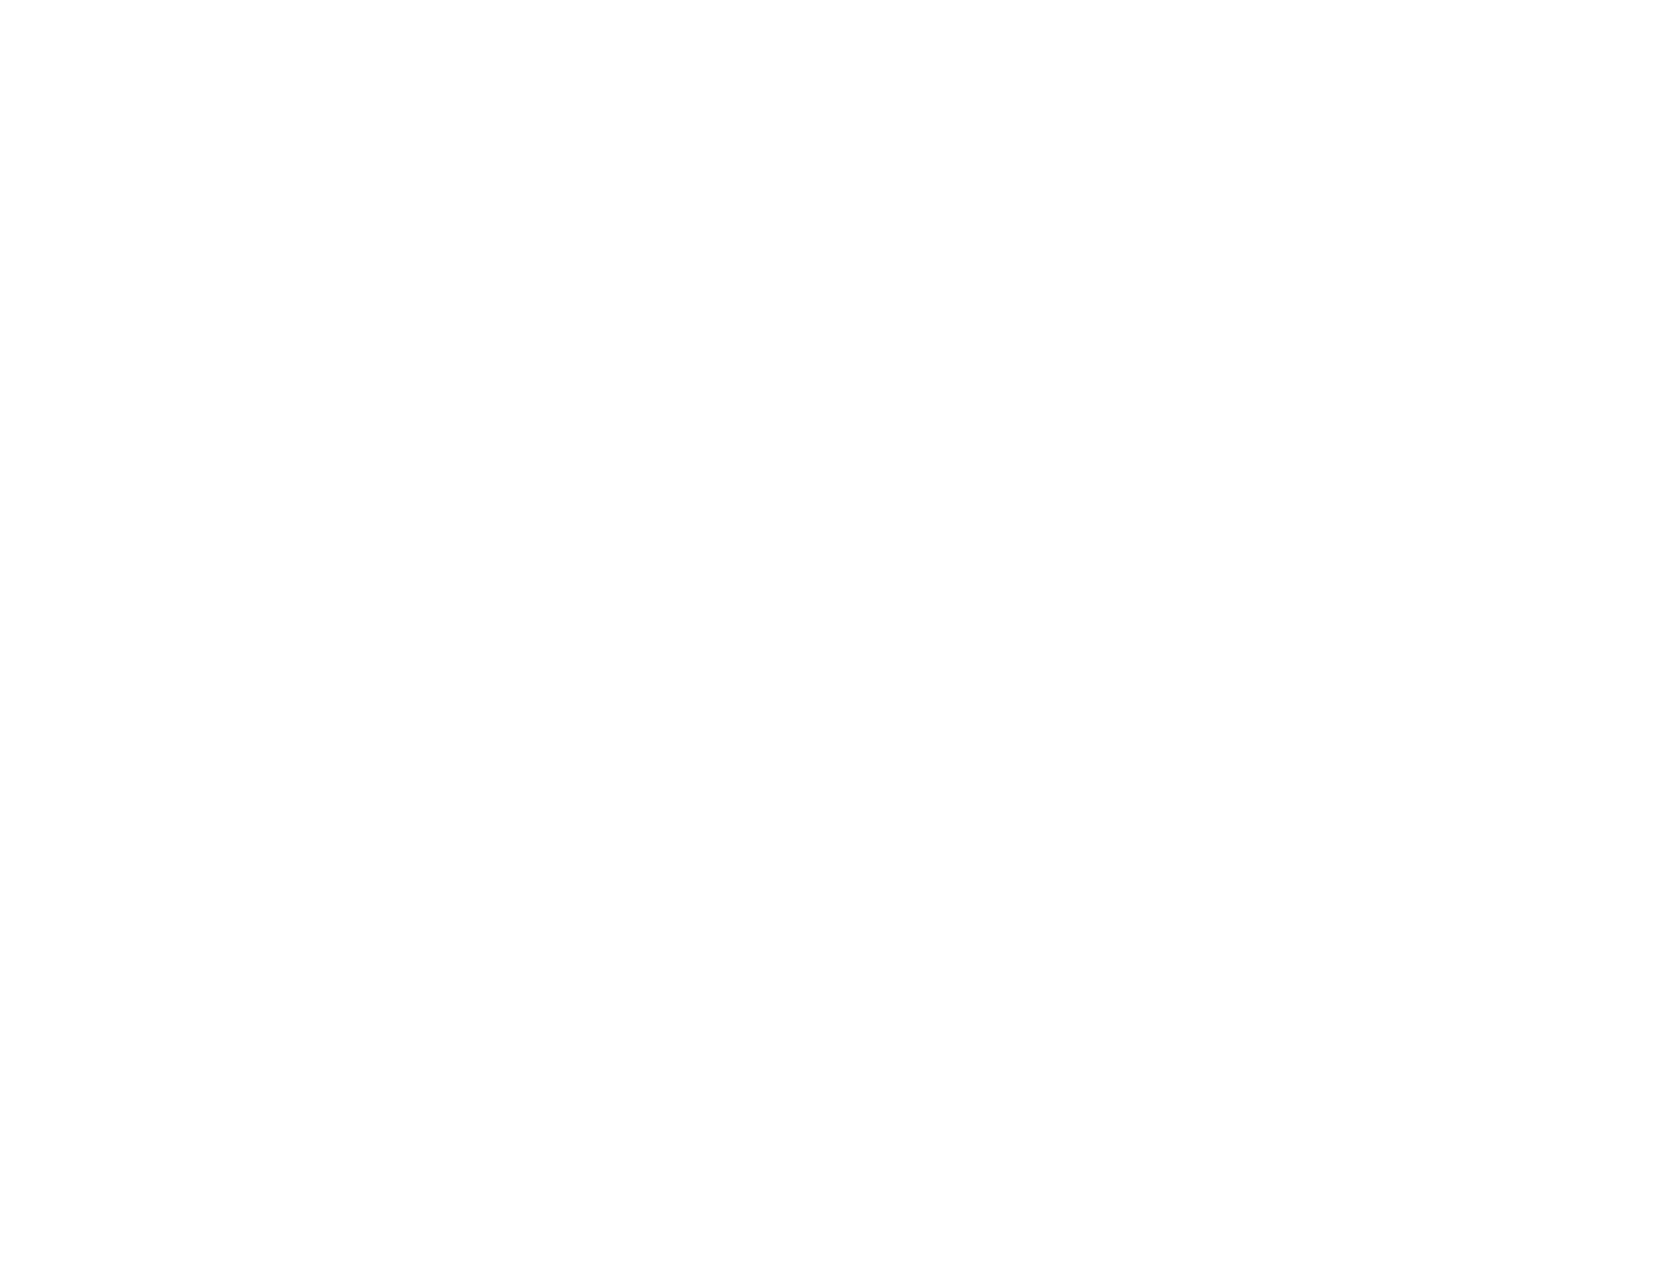 Ламповые настольные часы "Лезниковский гранит" на газоразрядных индикаторах ИН-14. Лезниковский гранит - один из самых известных и узнаваемых в мире